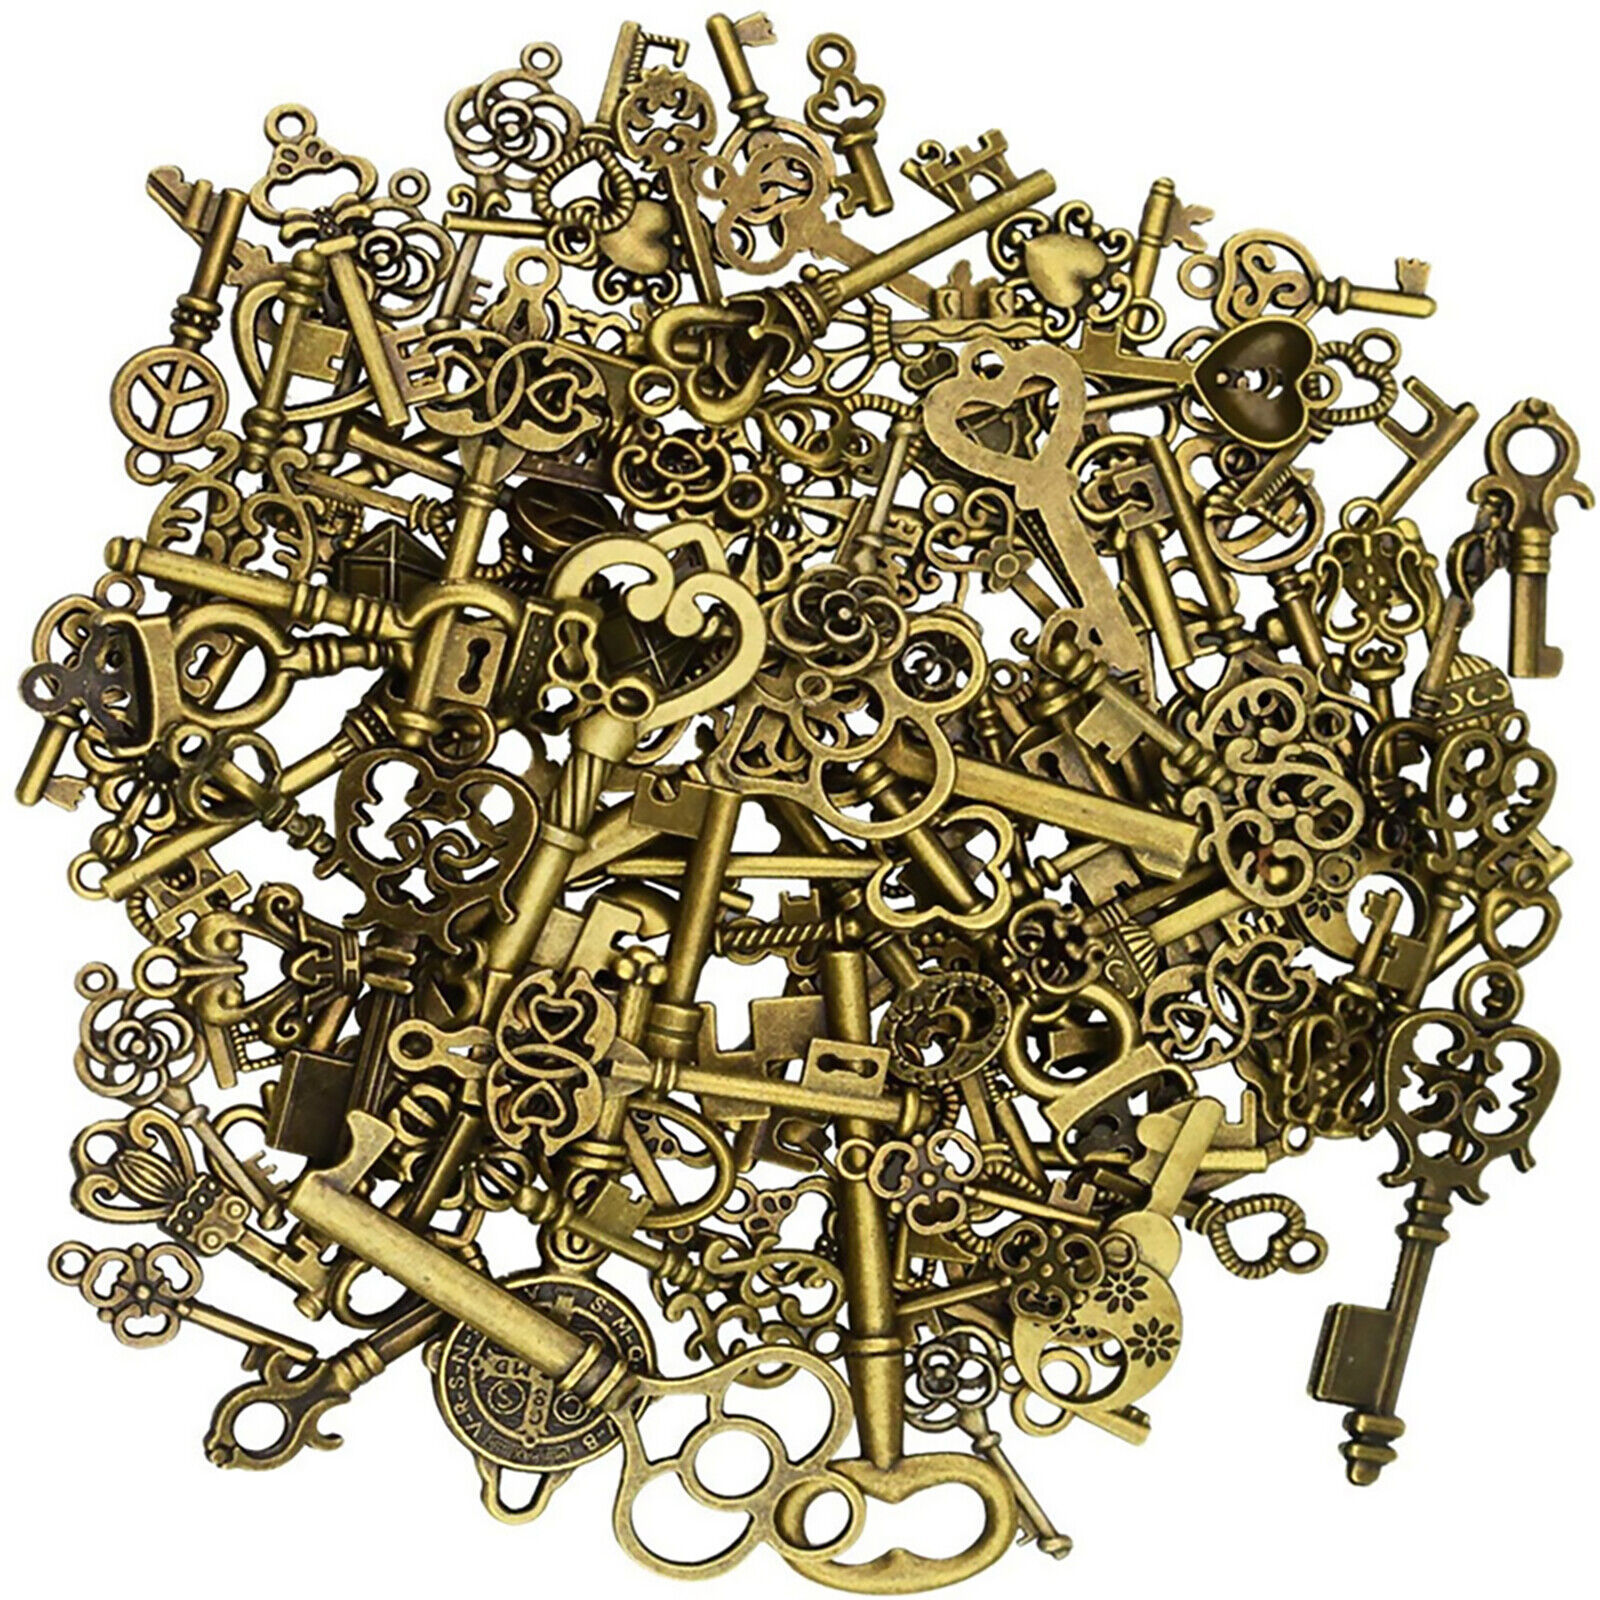 125Pcs/Set Vintage Style Antique Skeleton Furniture Cabinet Old Lock Keys Jewels